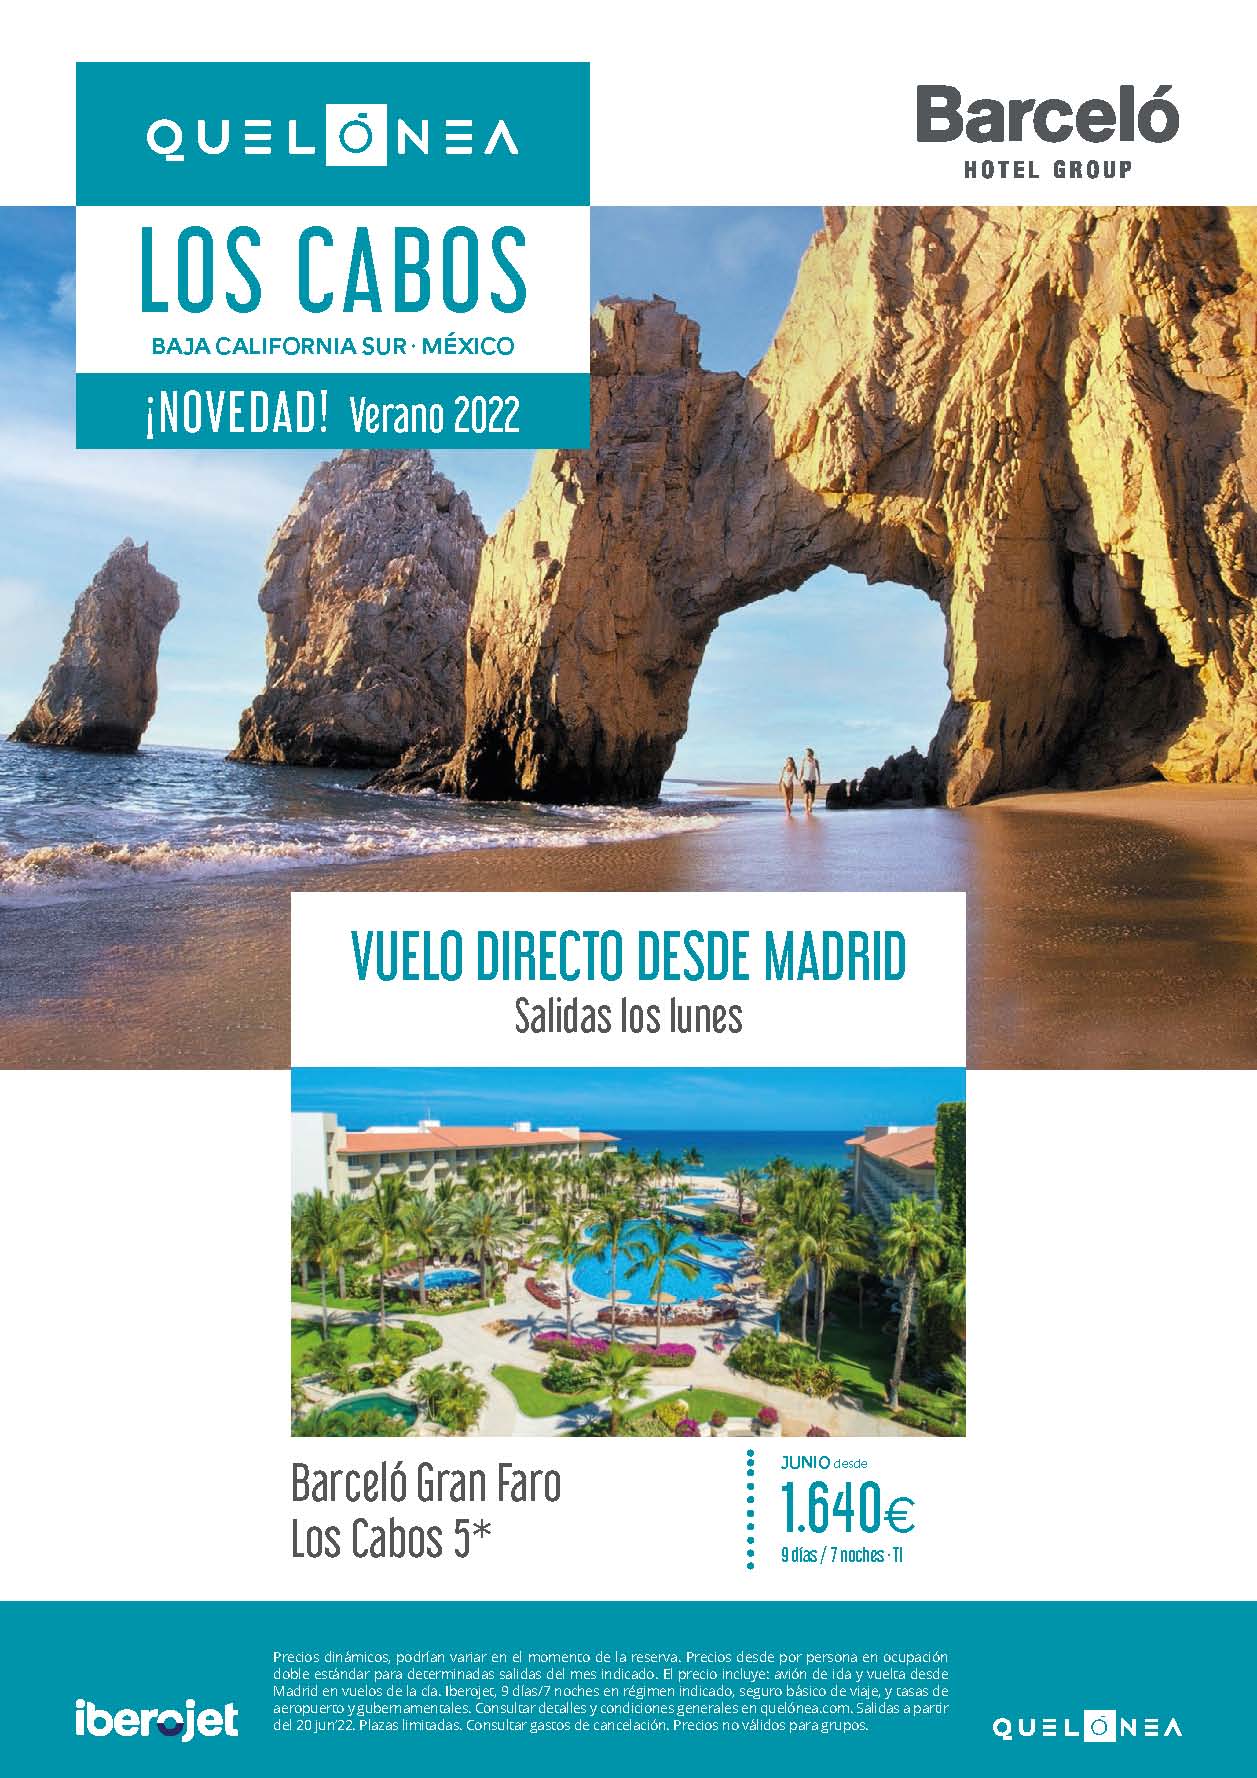 Oferta Quelonea Los Cabos Baja California Sur Mexico Verano 2022 9 dias Barcelo Hotel Group vuelo directo desde Madrid